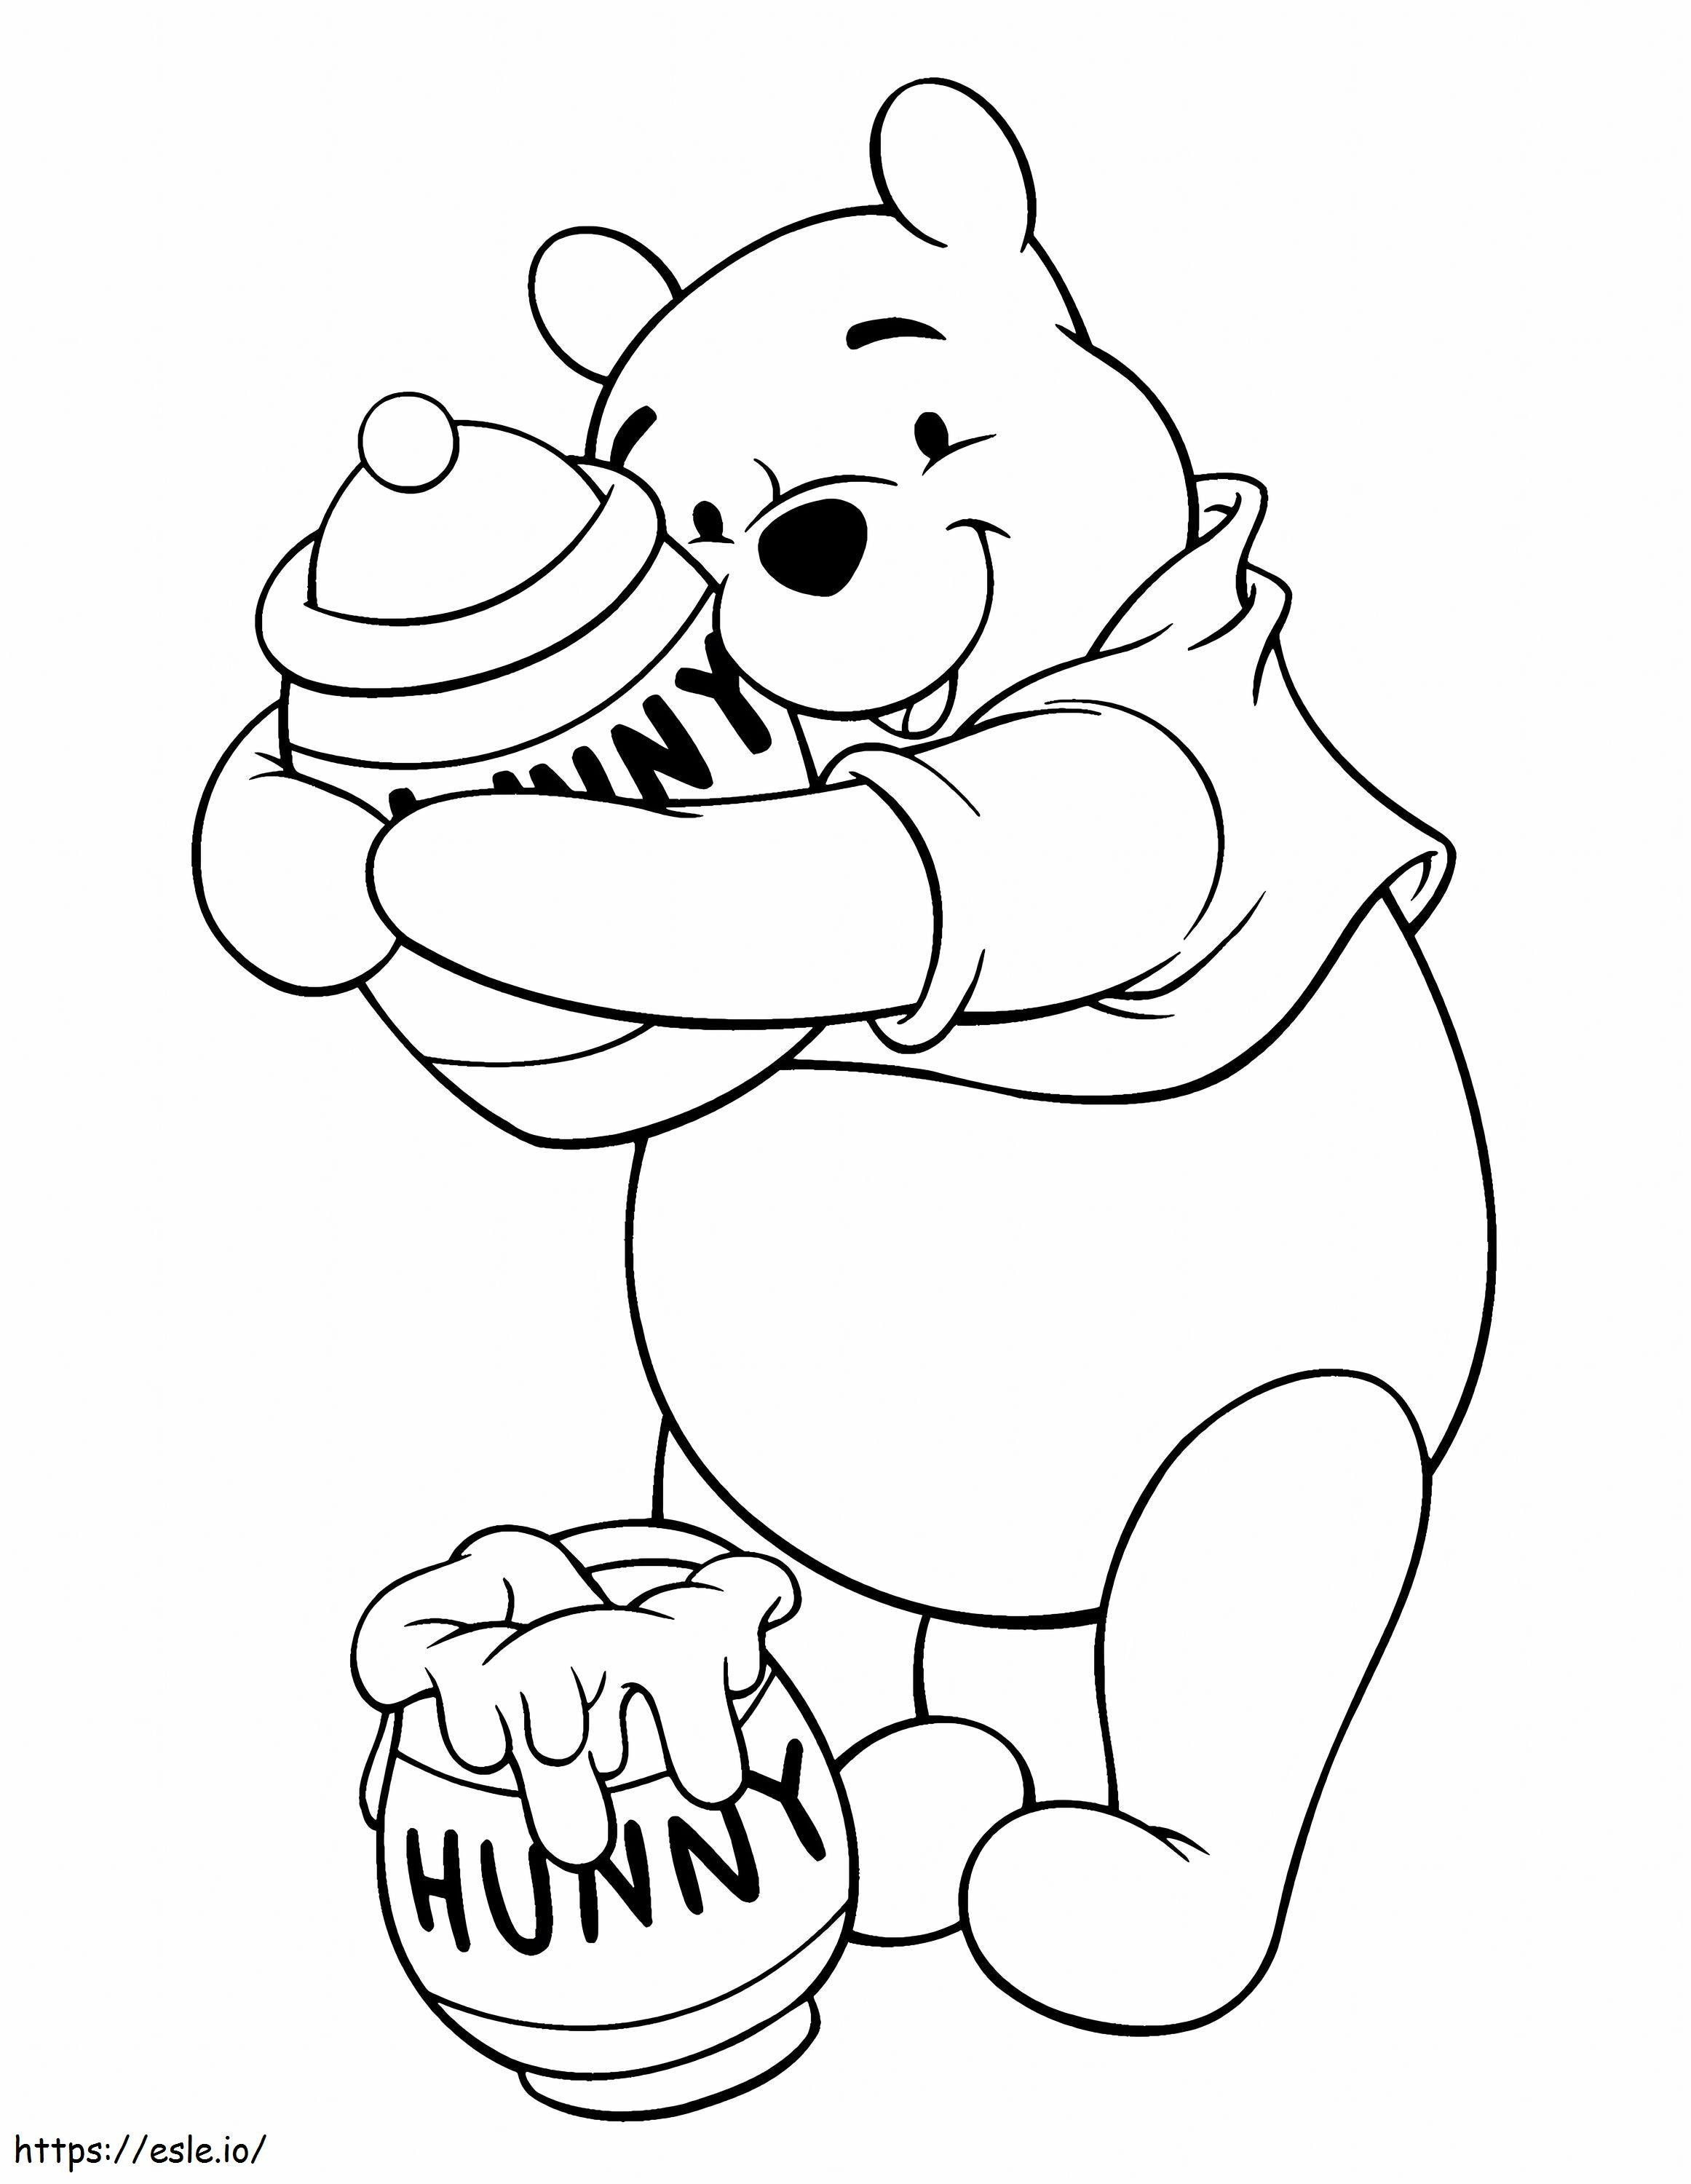 Ursinho Pooh e dois potes de mel para colorir